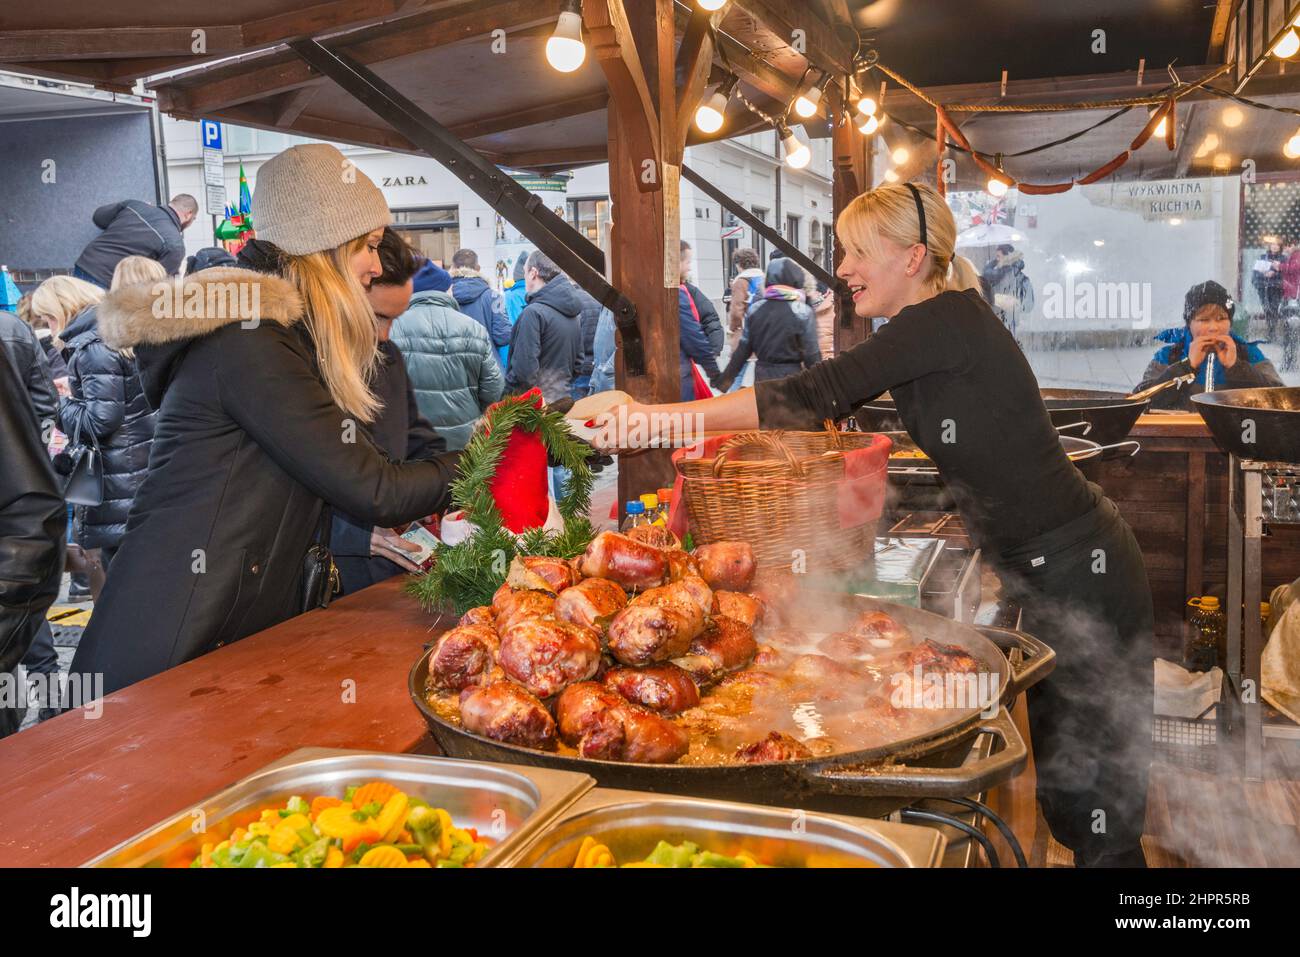 Clienti, cibo caldo presso lo stand di strada al mercato di Natale, Piazza del mercato principale, Kraków, Polonia Foto Stock